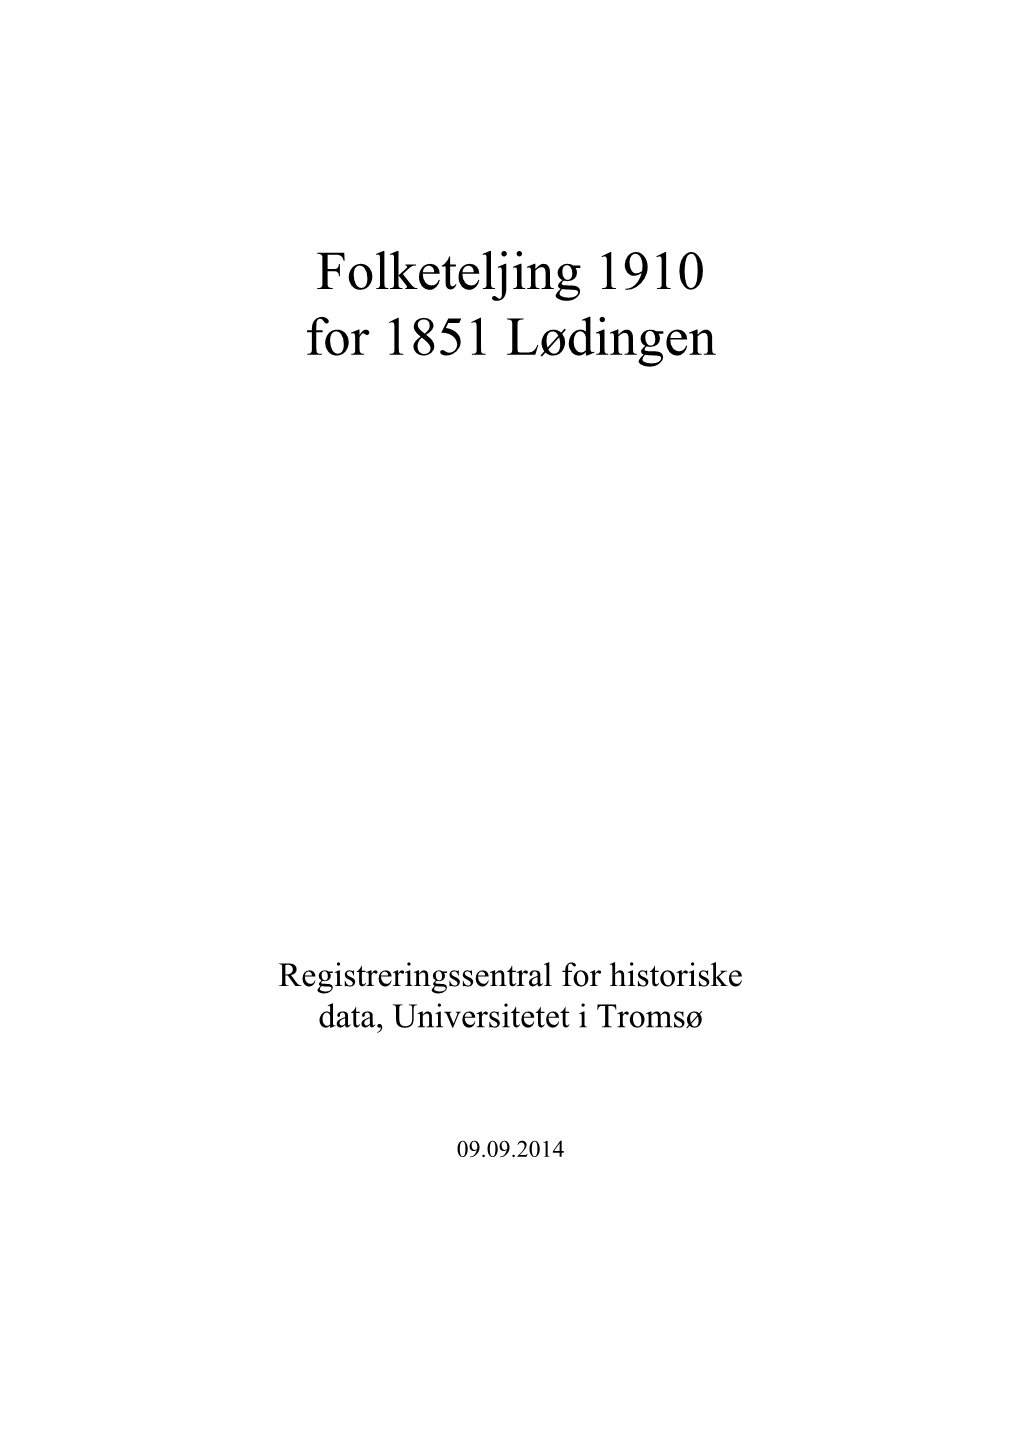 Folketeljing 1910 for 1851 Lødingen